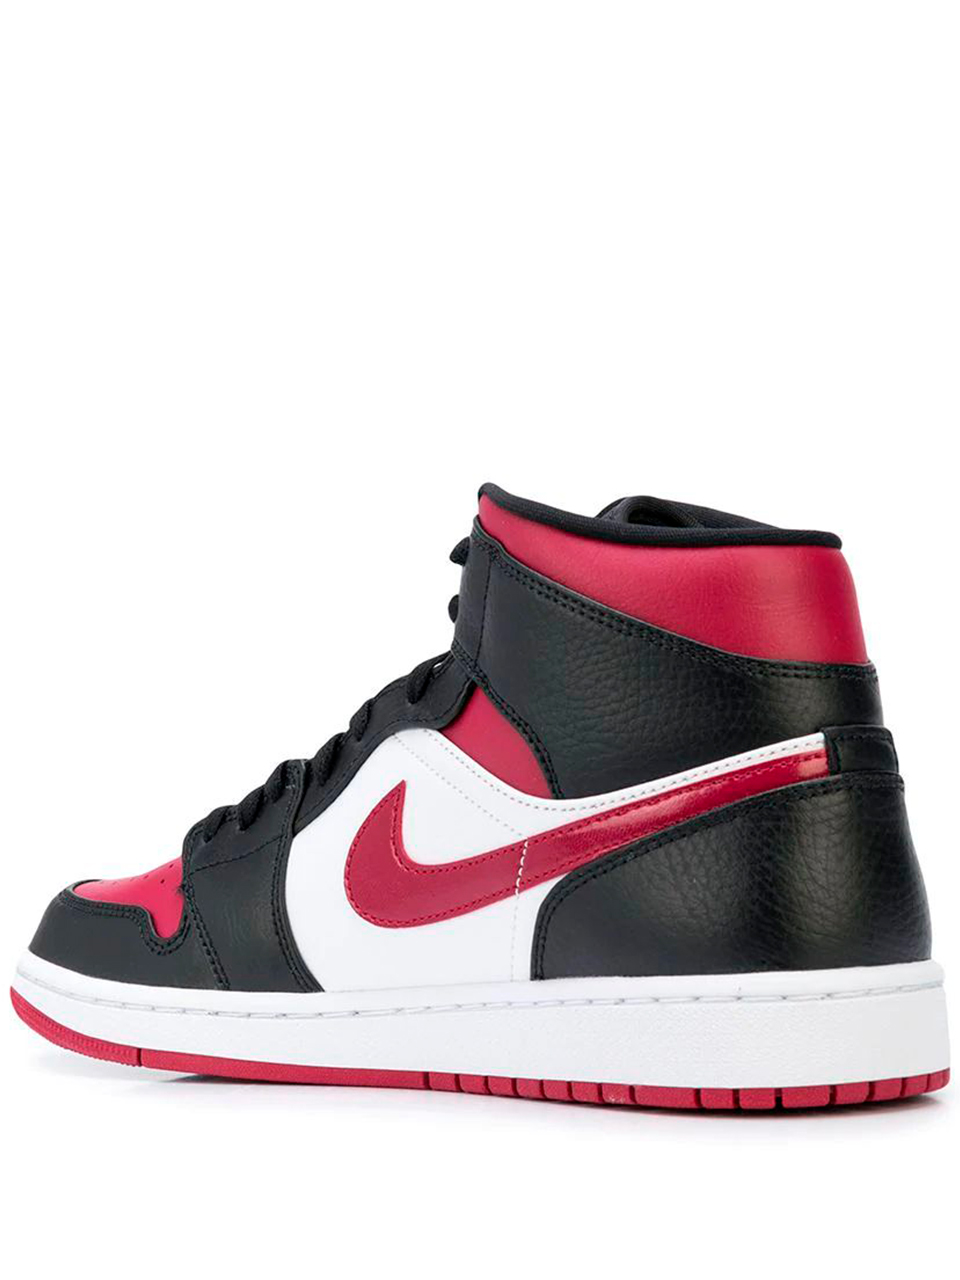 Imagem de: Tênis Nike Air Jordan 1 Mid Branco e Vermelho